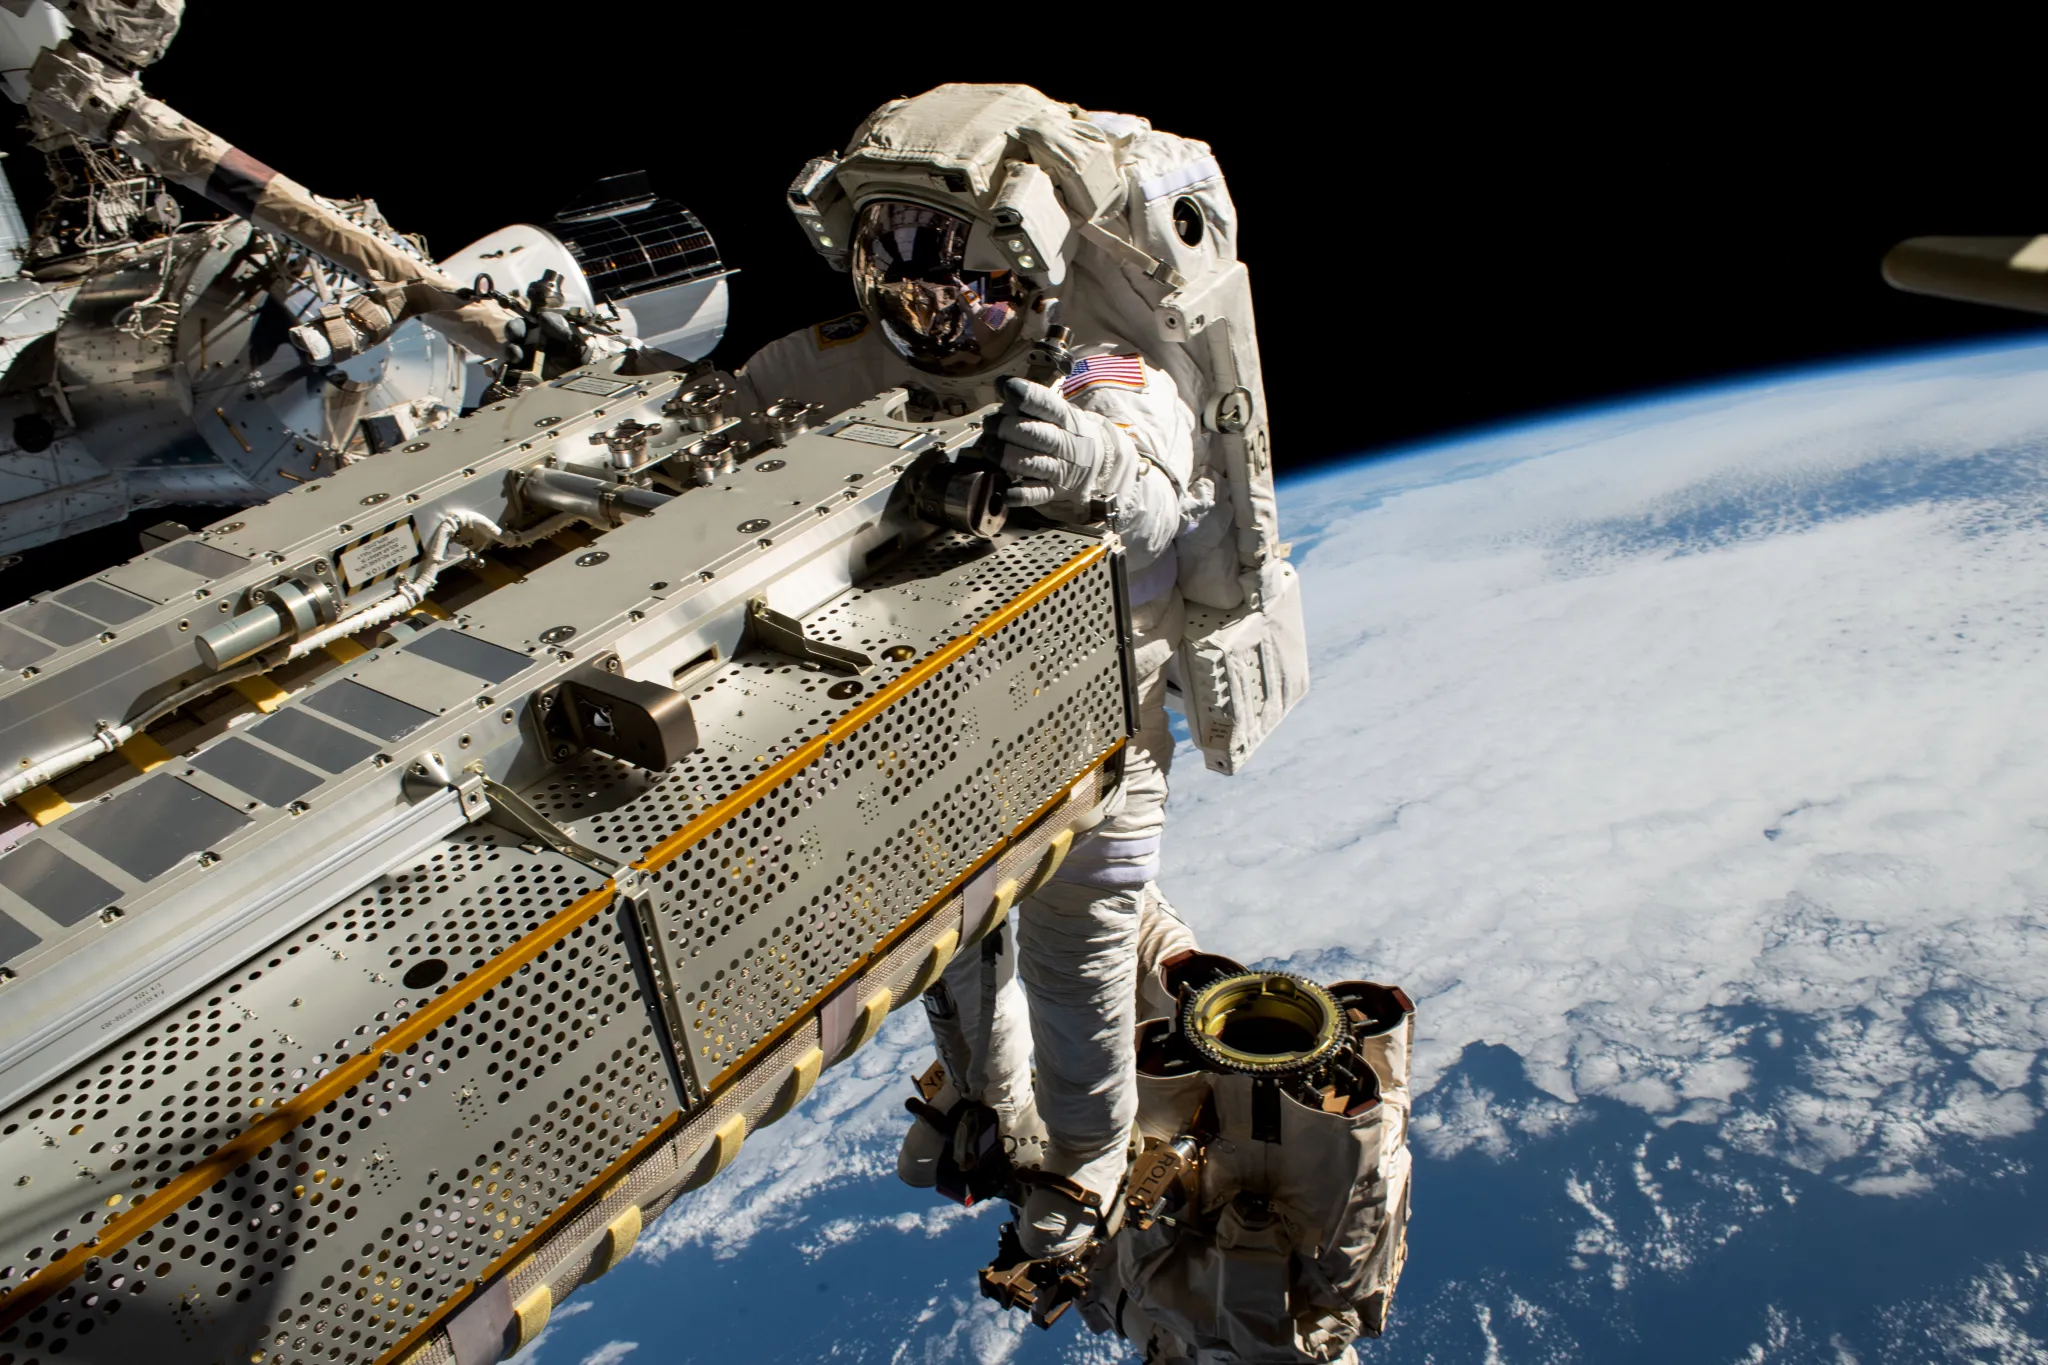 NASA-ina astronautkinja i inženjerka leta Ekspedicije 68, Woody Hoburg, koristi robotsku ruku Canadarm2 kako bi postavila solarni panel na trup Međunarodne svemirske postaje, 257 milja iznad Tihog oceana. U pozadini se vidi SpaceX Dragon letjelica, koja se priključila na prednji port modula Harmony 3. ožujka, noseći četvero članova posade SpaceX Crew-6. Zasluge: NASA.